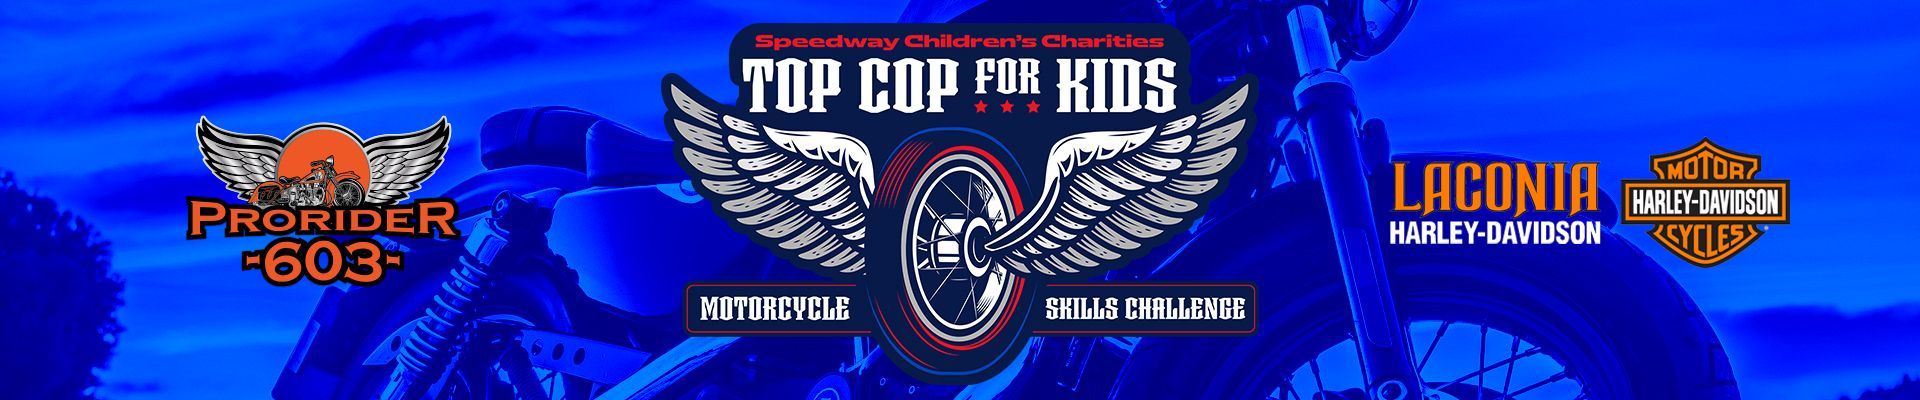 Top Cop Motorcycle Skills Challenge Header